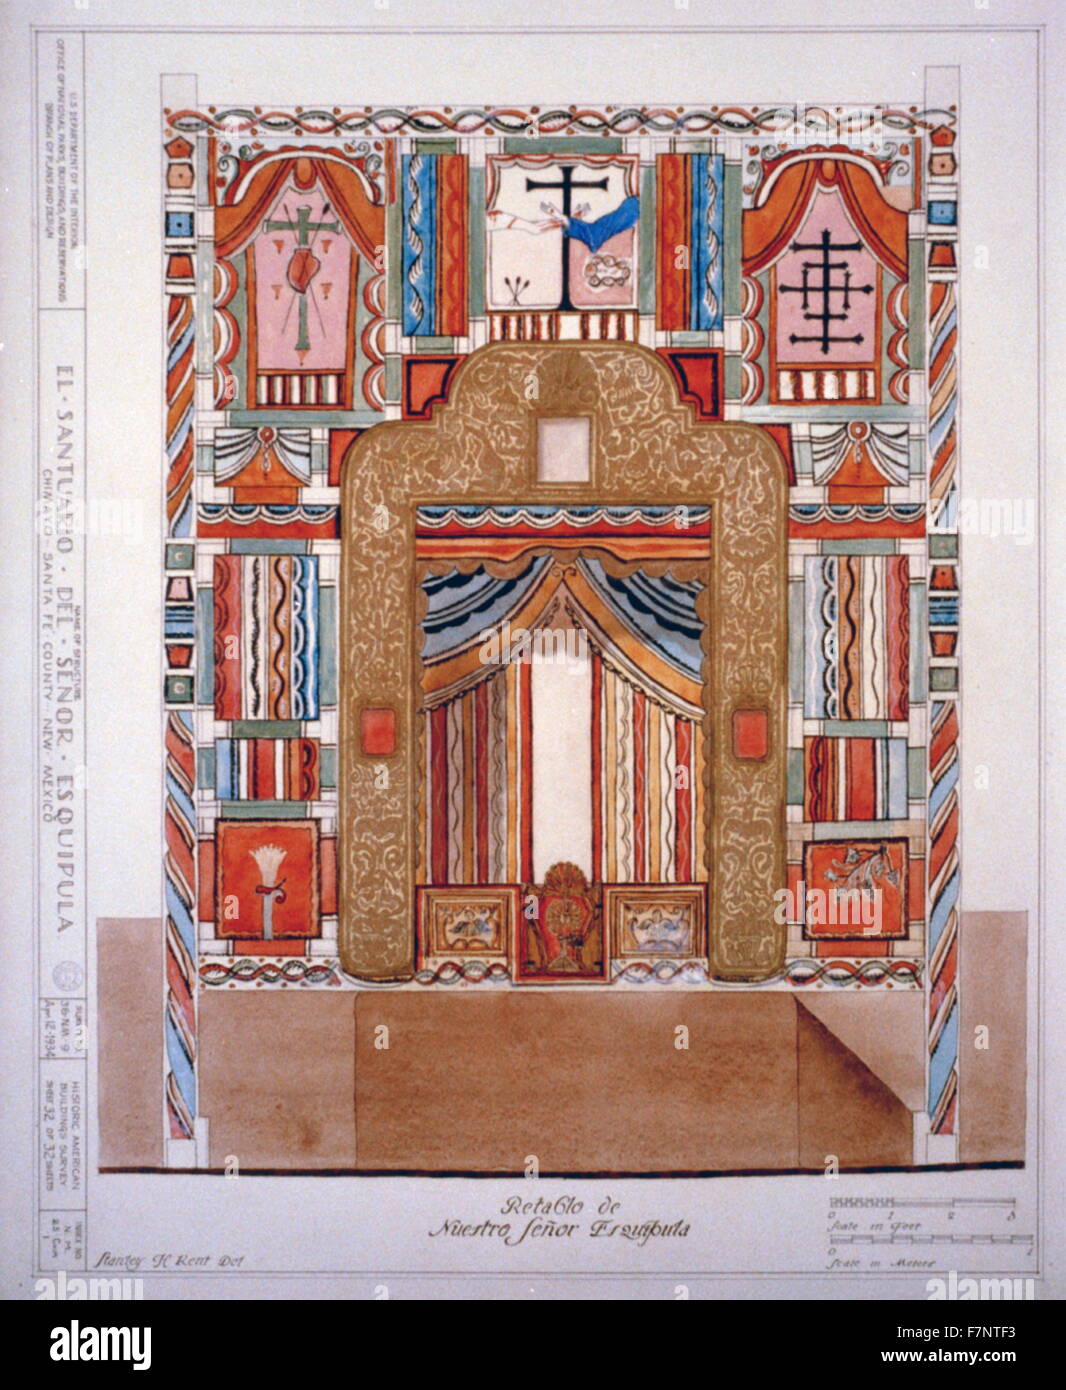 Illustration de l'intérieur d'El Santuario del Señor Esquipula Chimayo, Santa Fé, County, Nouveau Mexique. Datée 1900 Banque D'Images